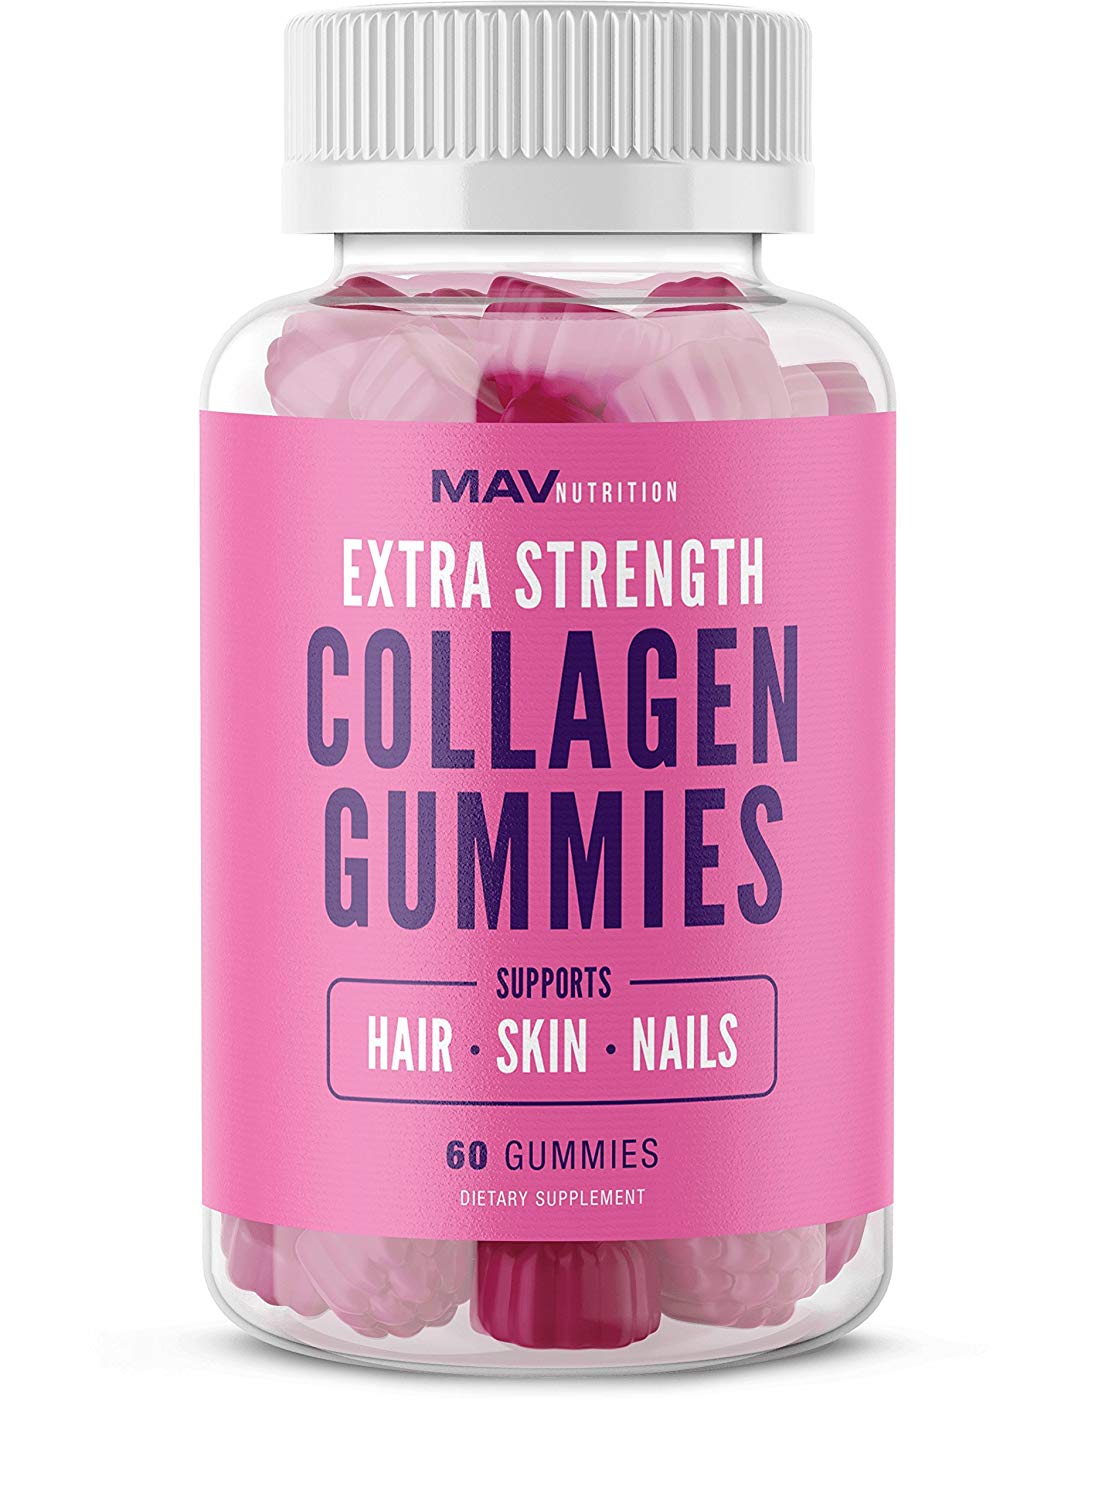 mav nutrition collagen gummies